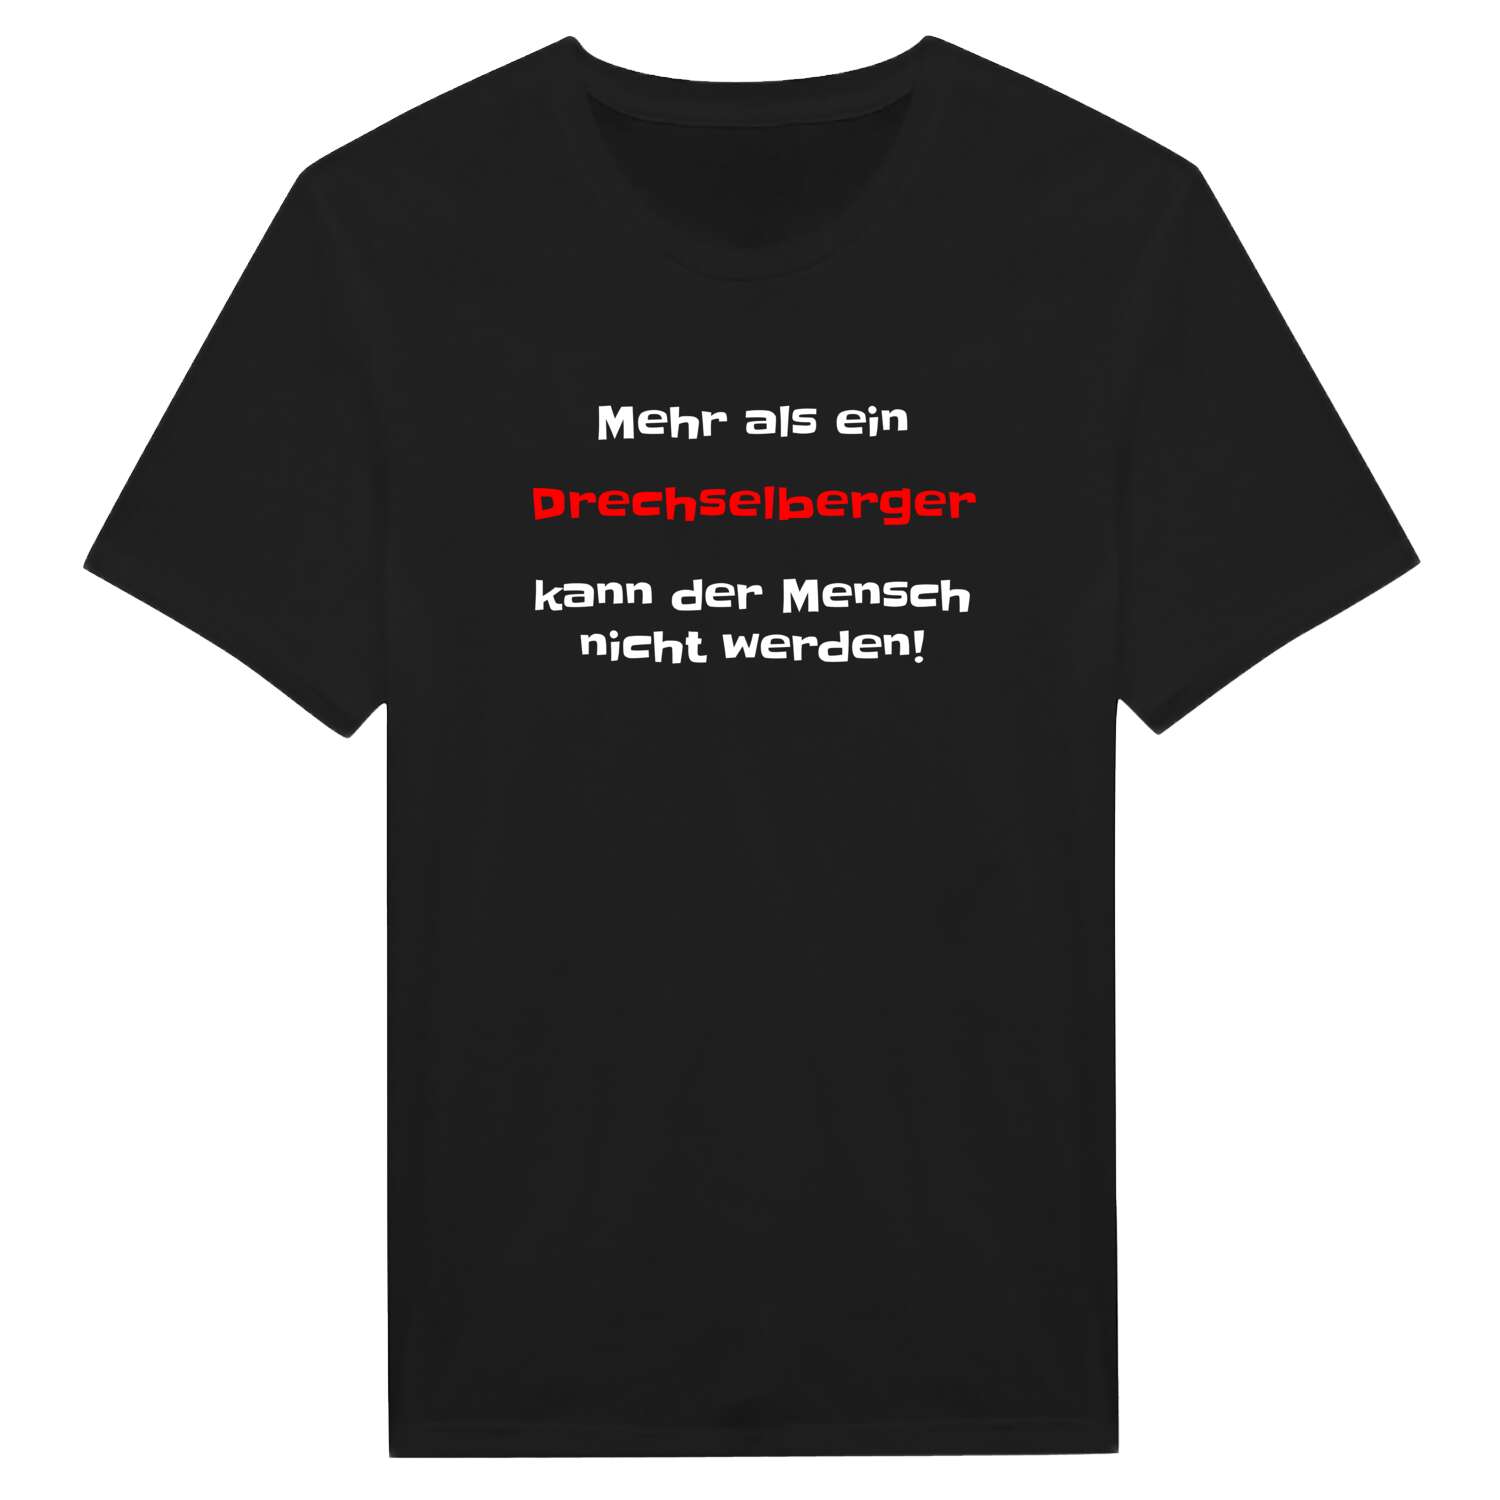 Drechselberg T-Shirt »Mehr als ein«